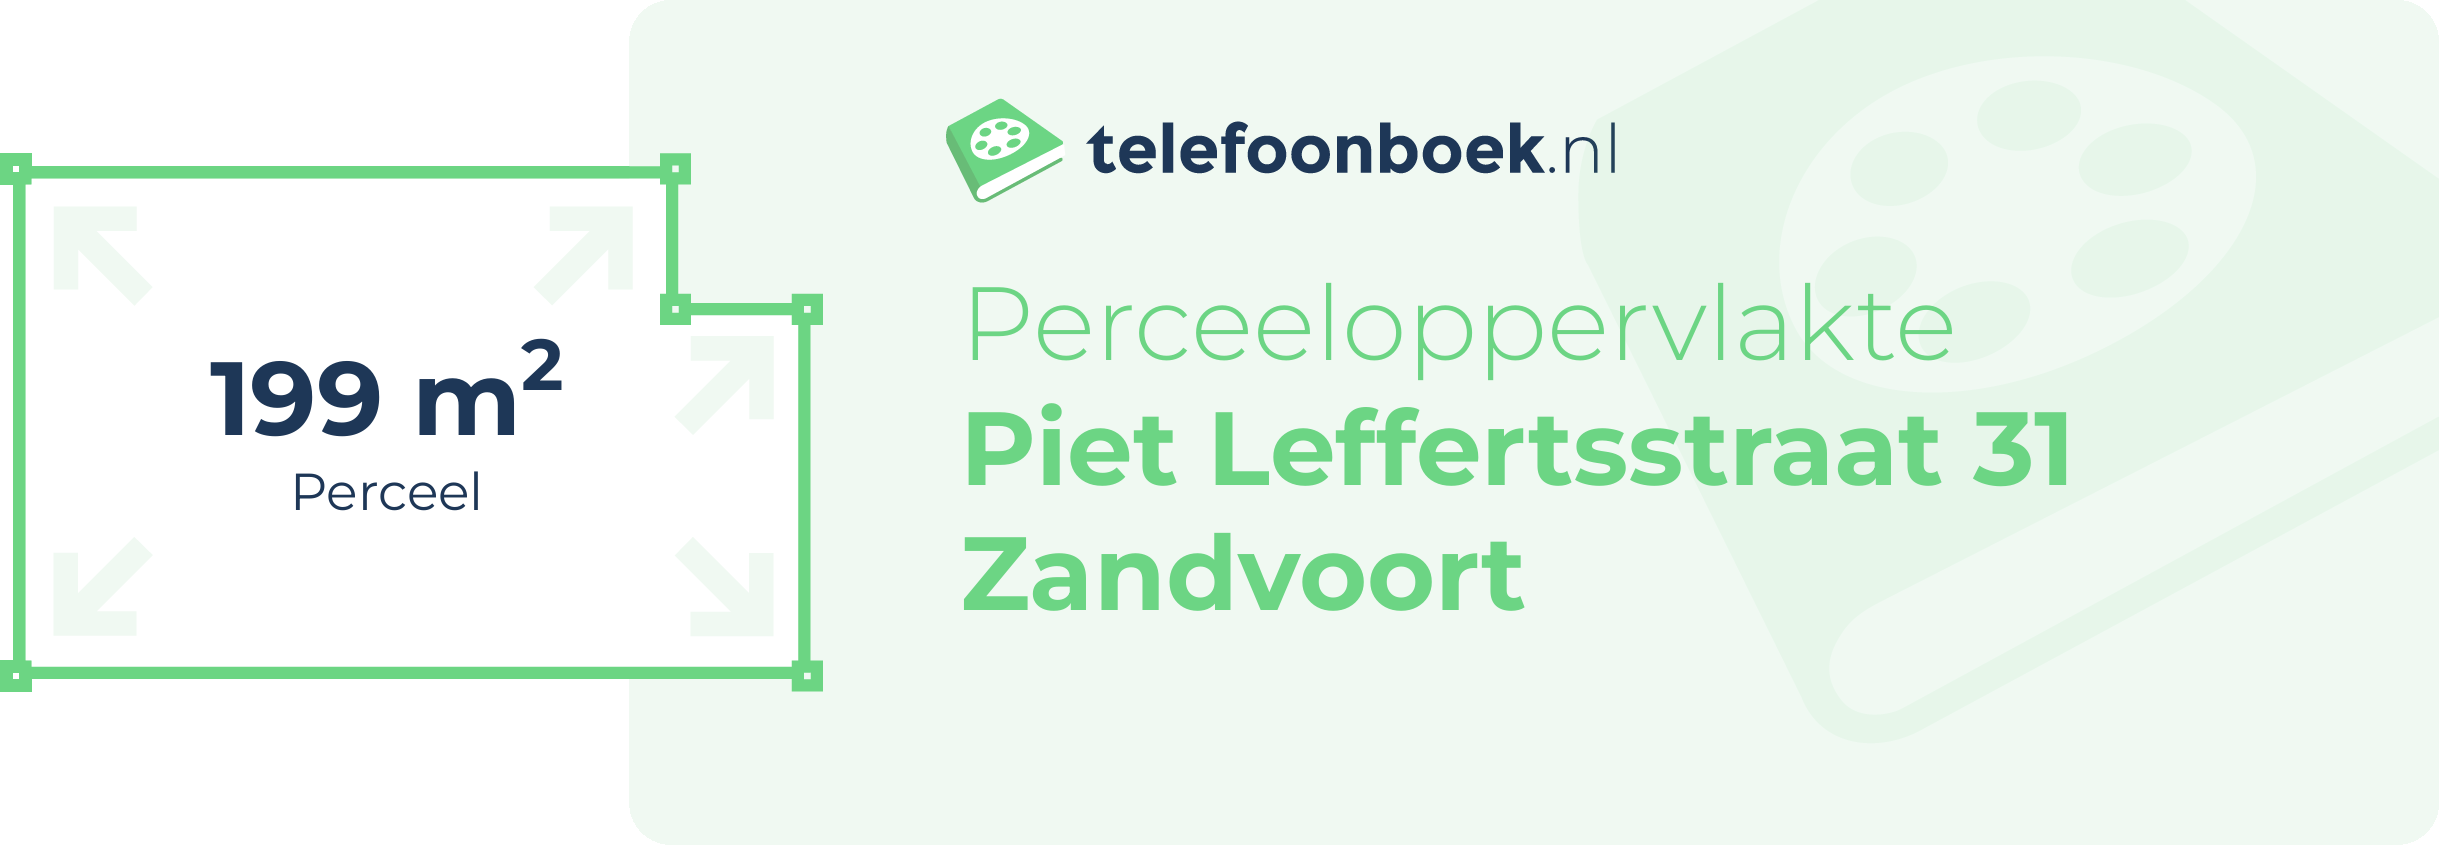 Perceeloppervlakte Piet Leffertsstraat 31 Zandvoort